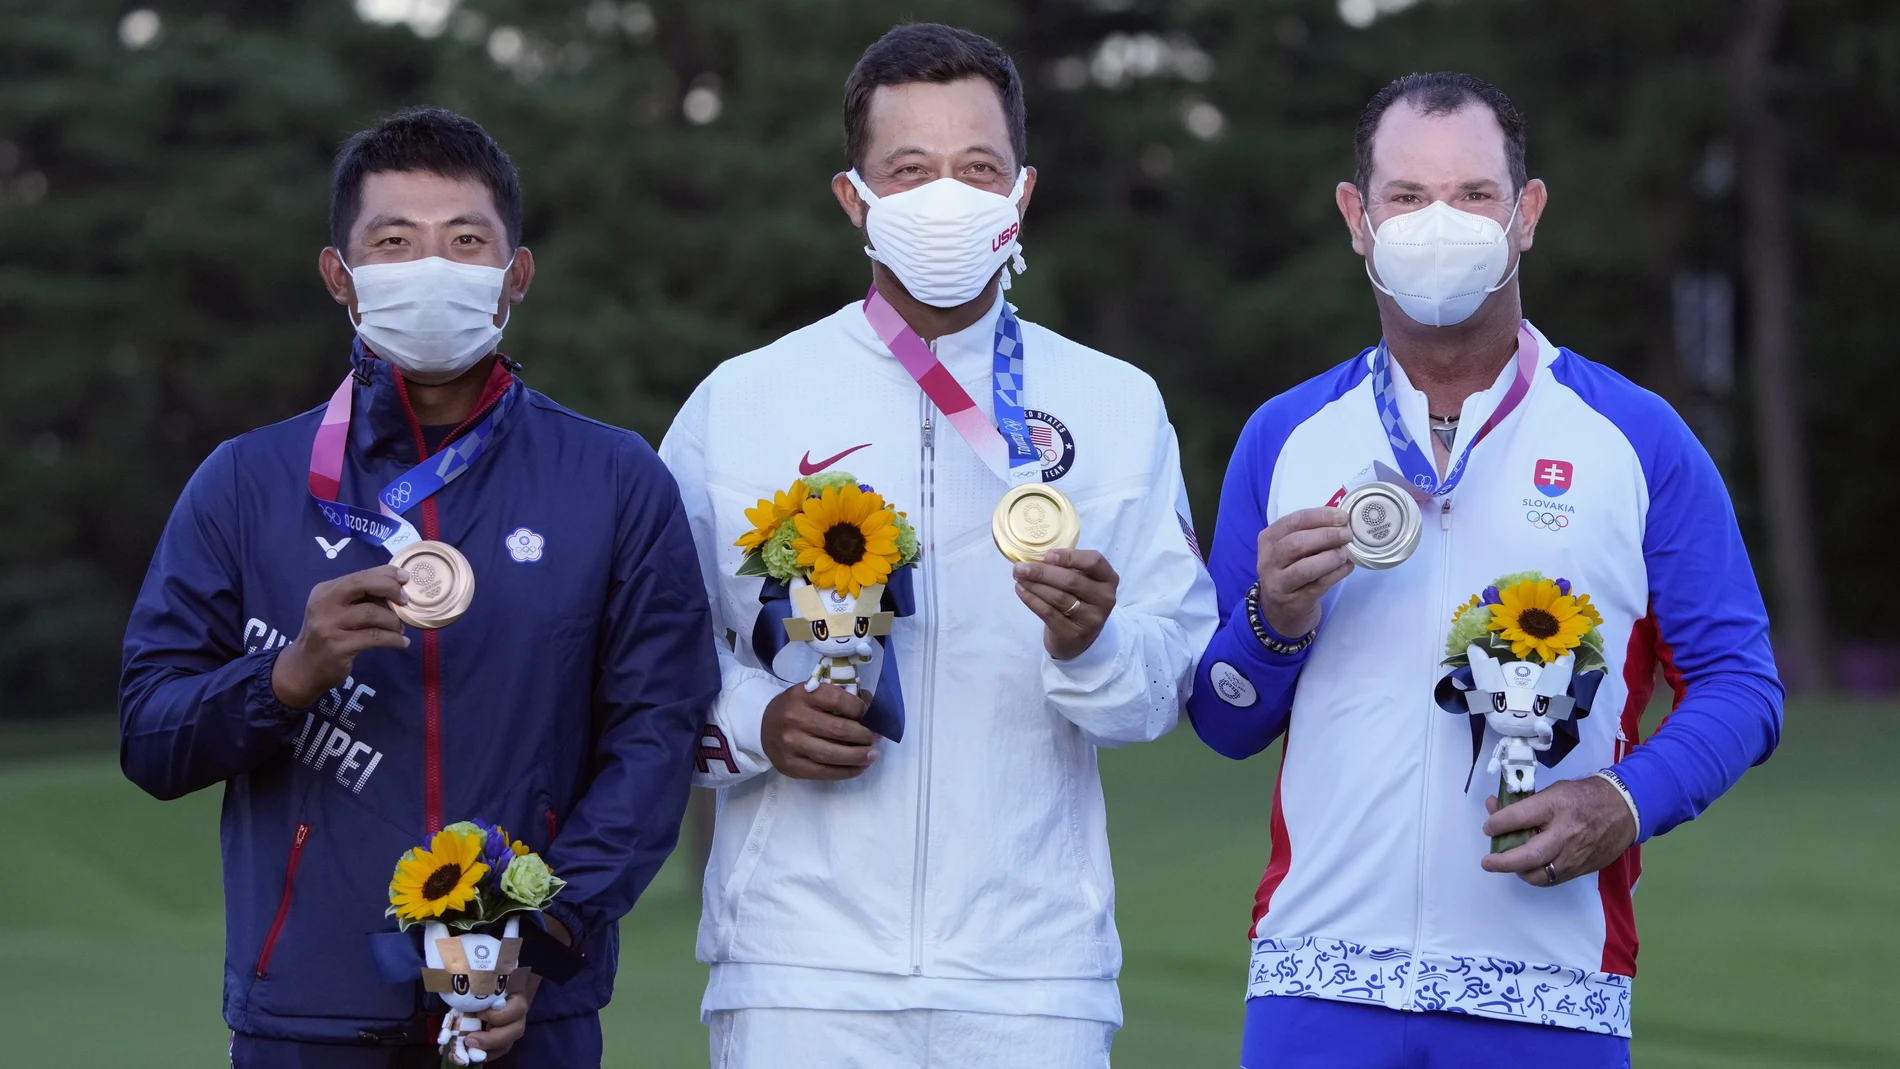 El campeón olímpico de golf, Xander Schauffele, posa junto a Pan Cheng y Rory Sabatini